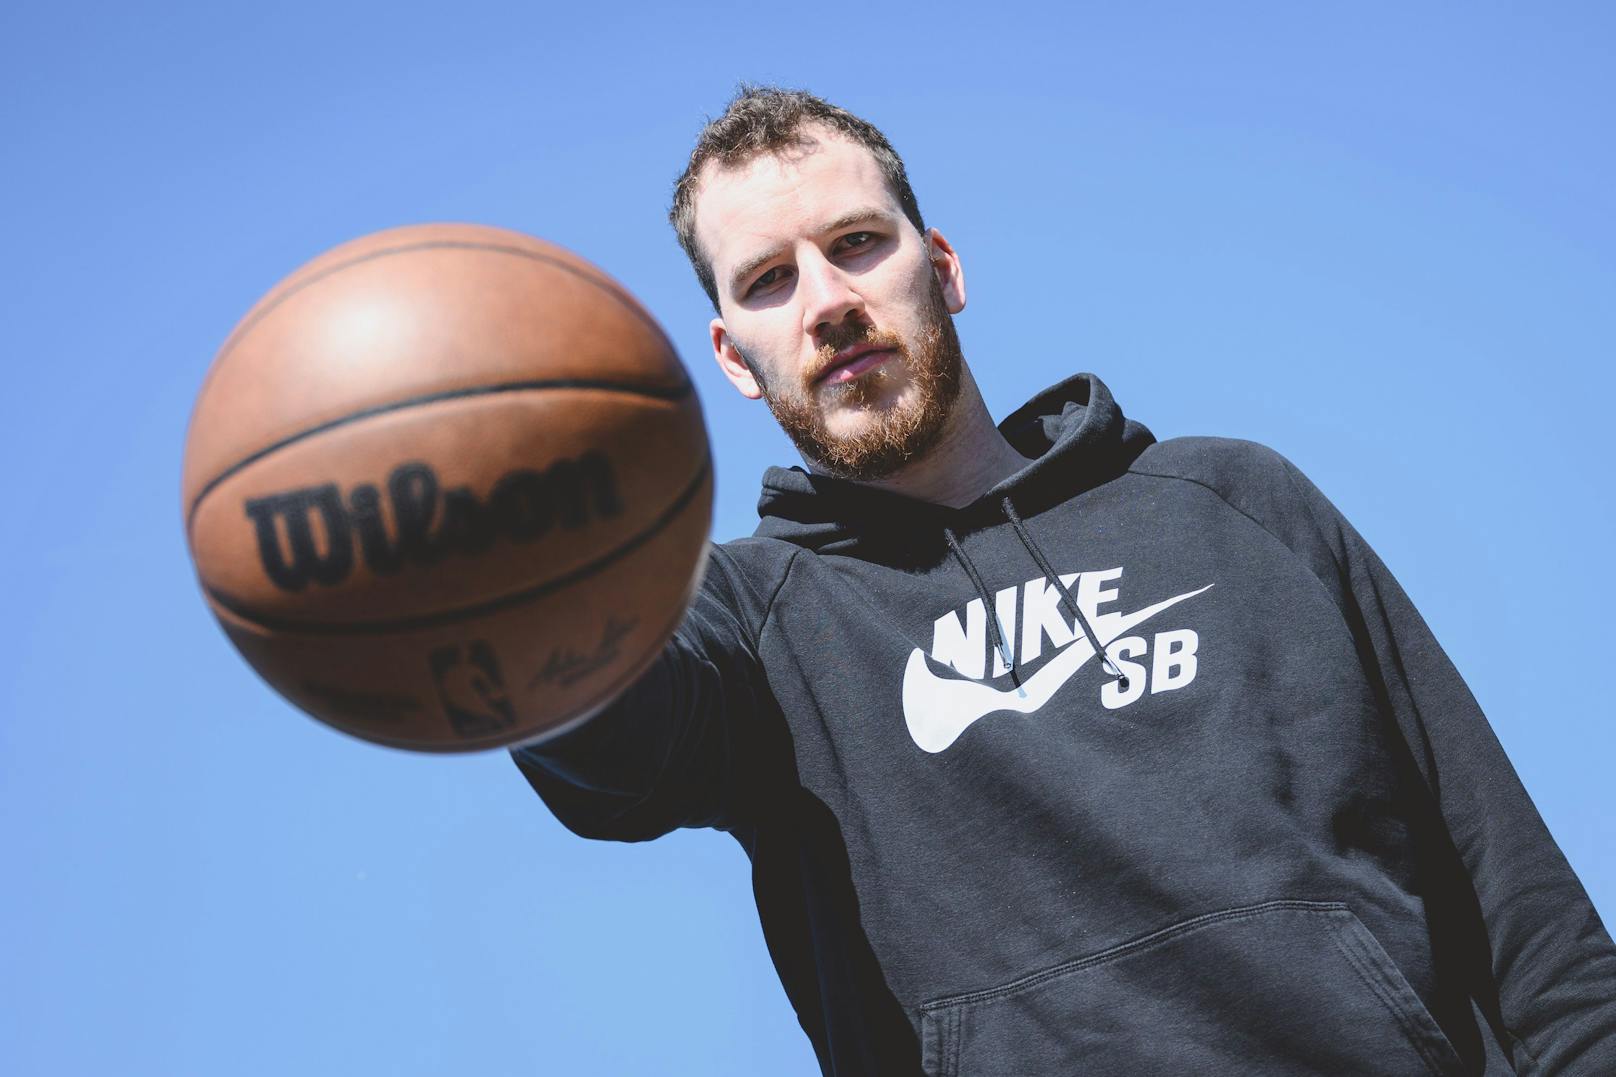 NBA-Star Pöltl: "Beim Kickerl im Freibad bin ich dabei"